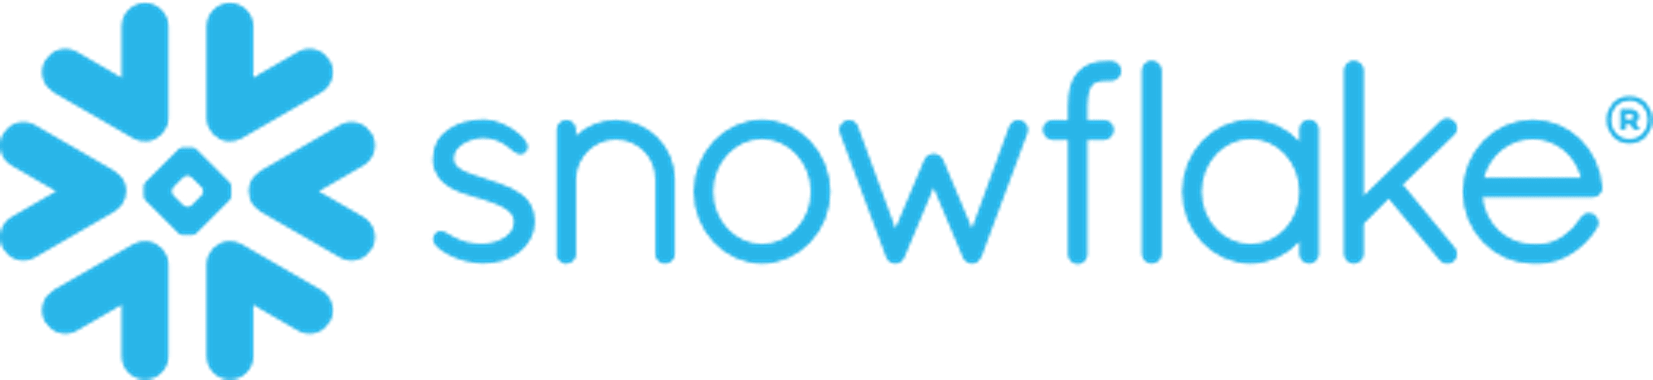 Snowflake Data Warehouse Logo